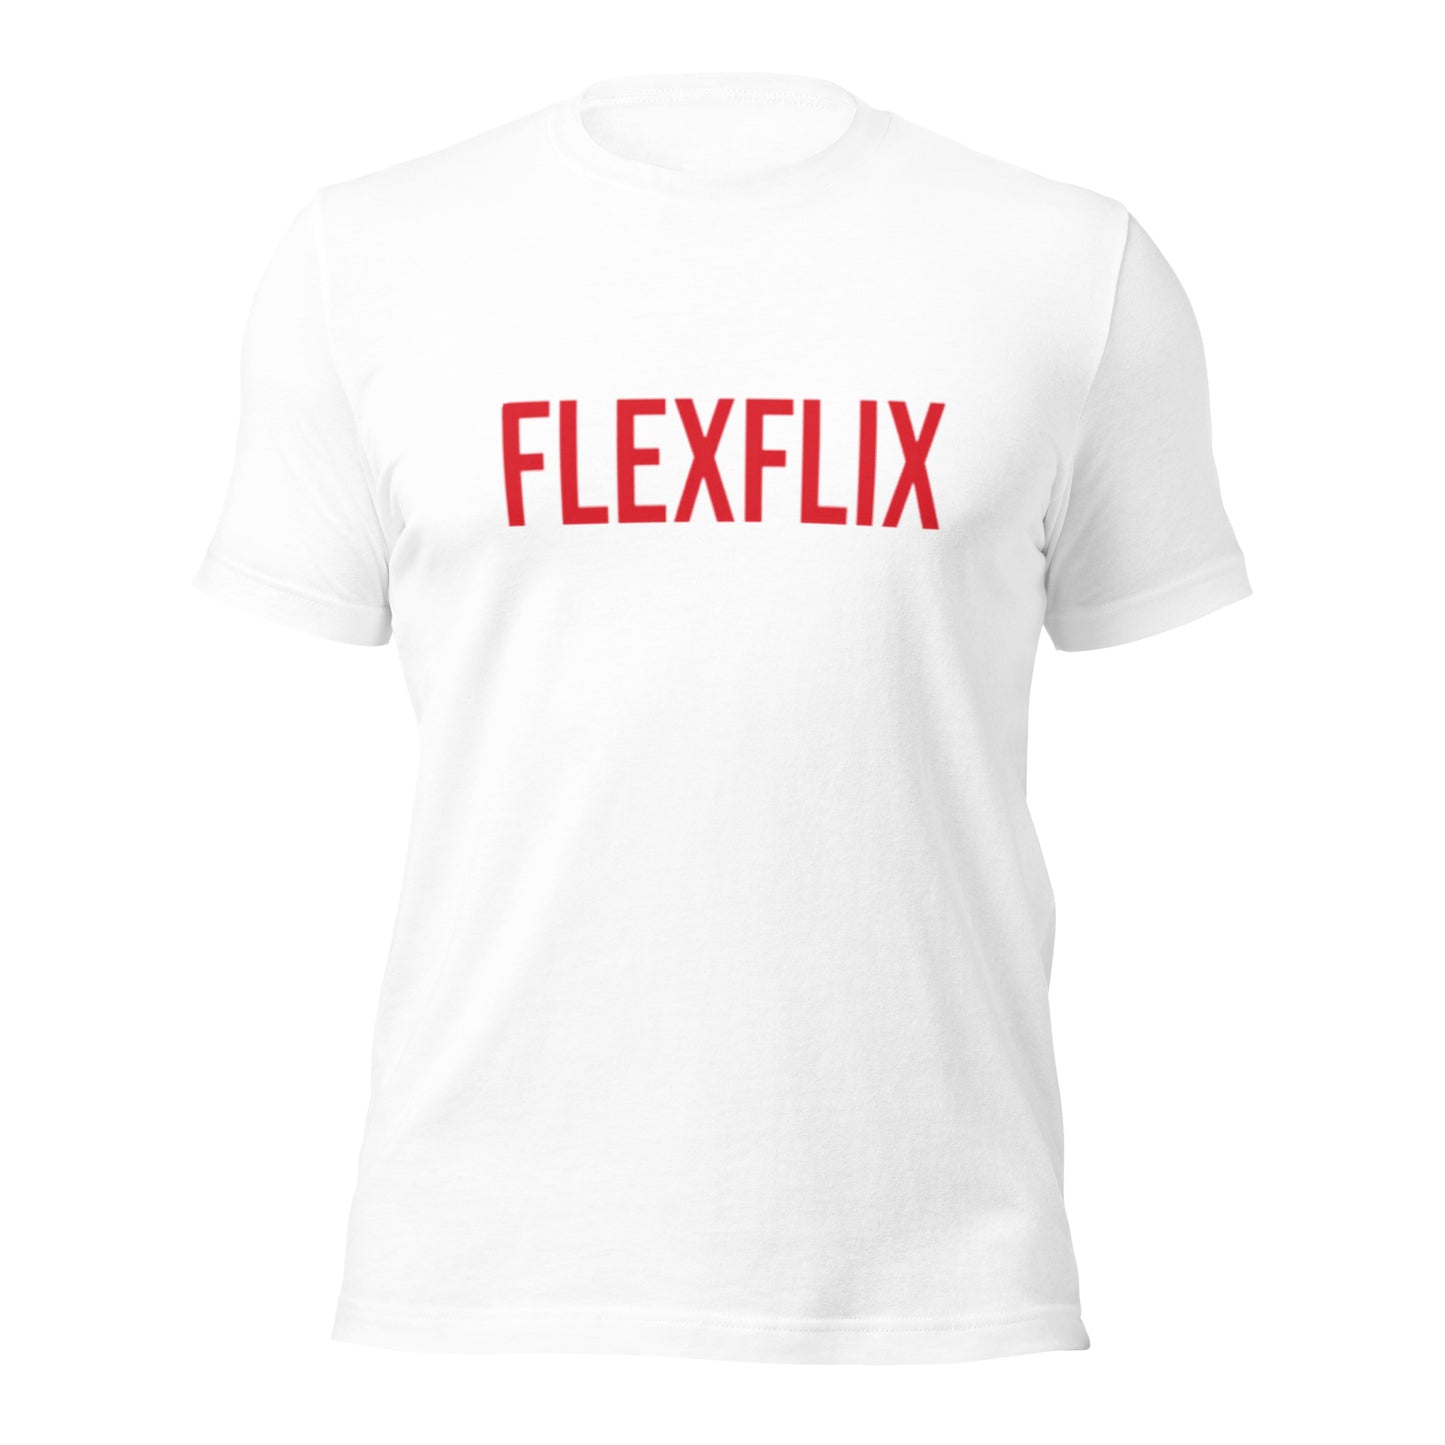 Flexflix-T-Shirt